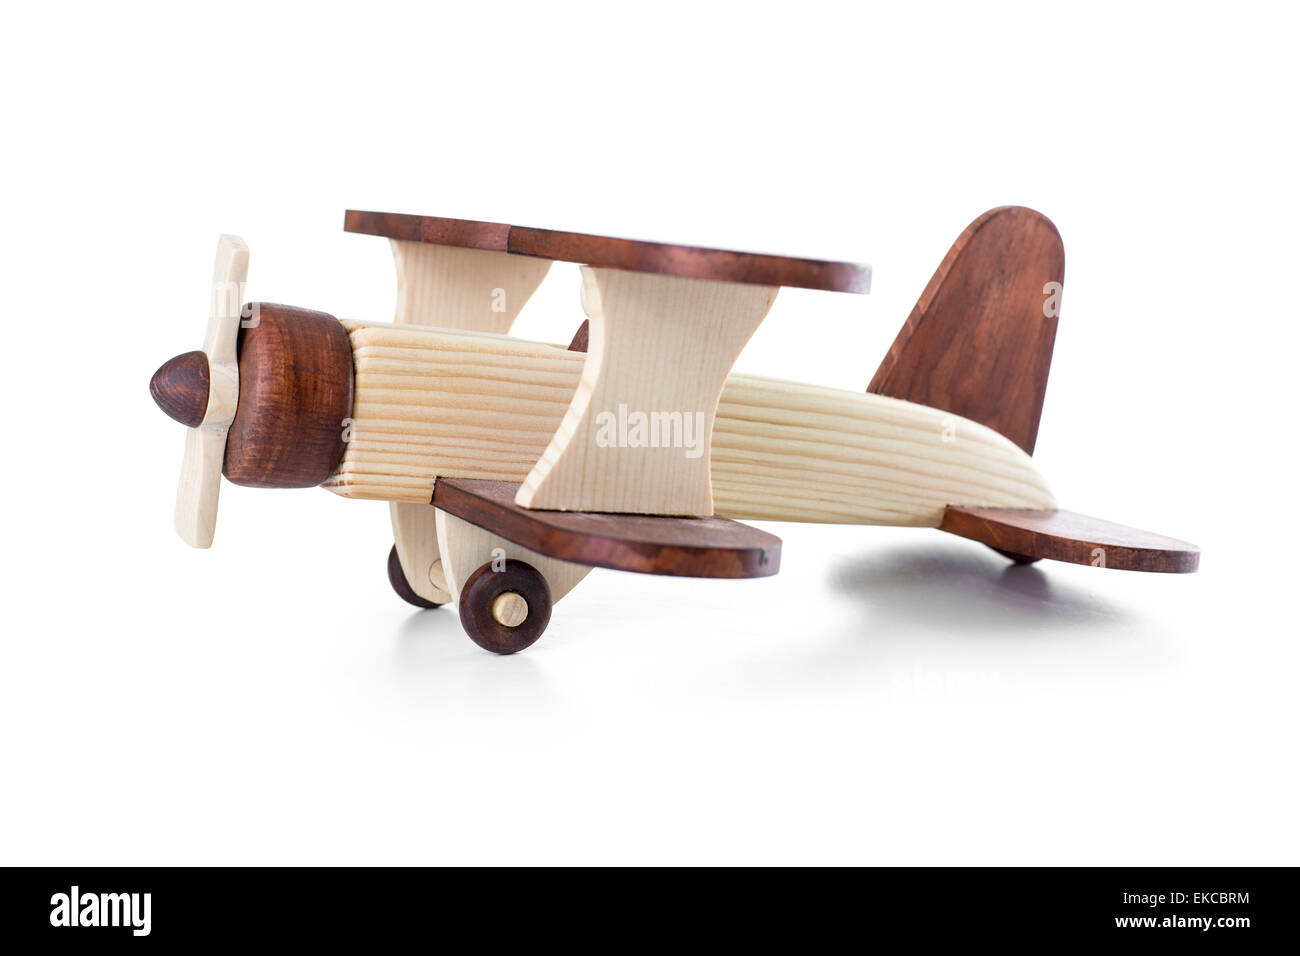 Modèle d'avion en bois isolé, vue latérale Banque D'Images